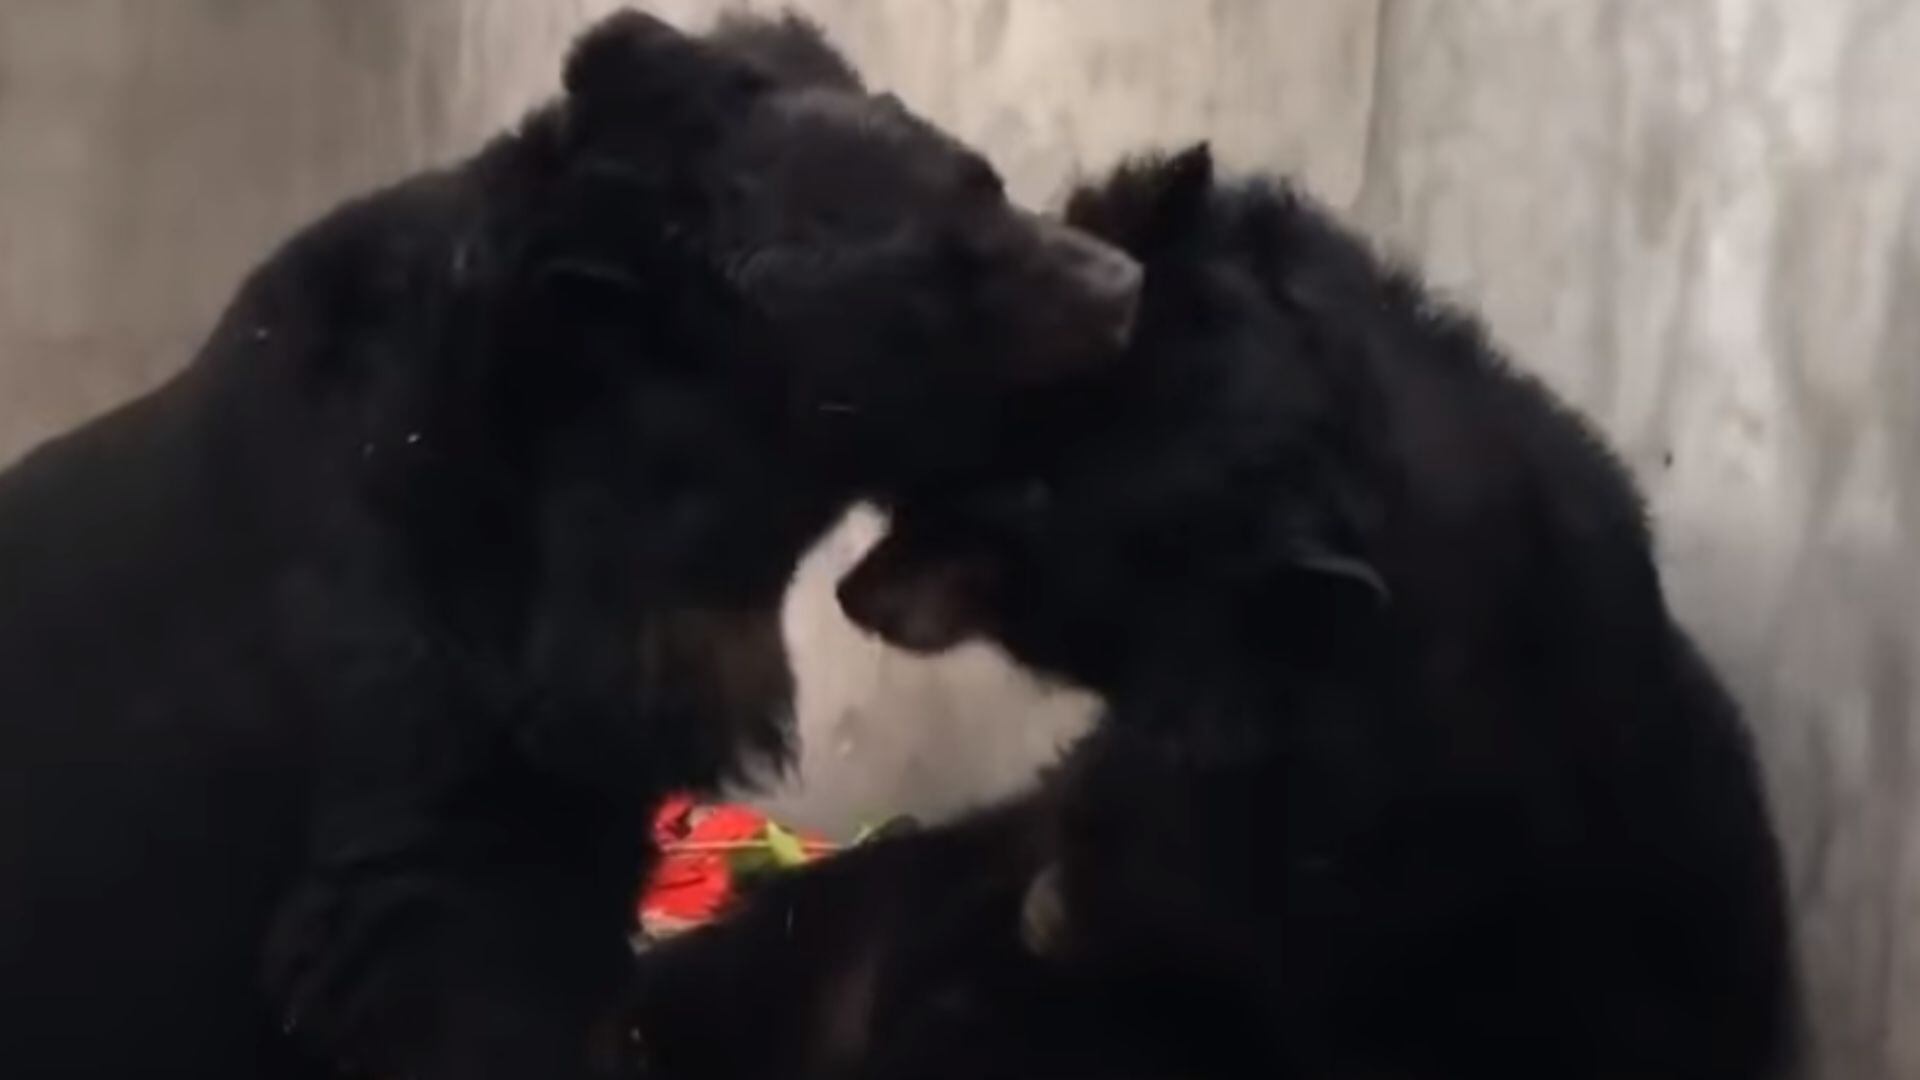 El abrazo que conmovió al mundo: dos osos negros se reencuentran tras ser rescatados de una granja de bilis (Captura de Pantalla/Facebook Animals Asia)